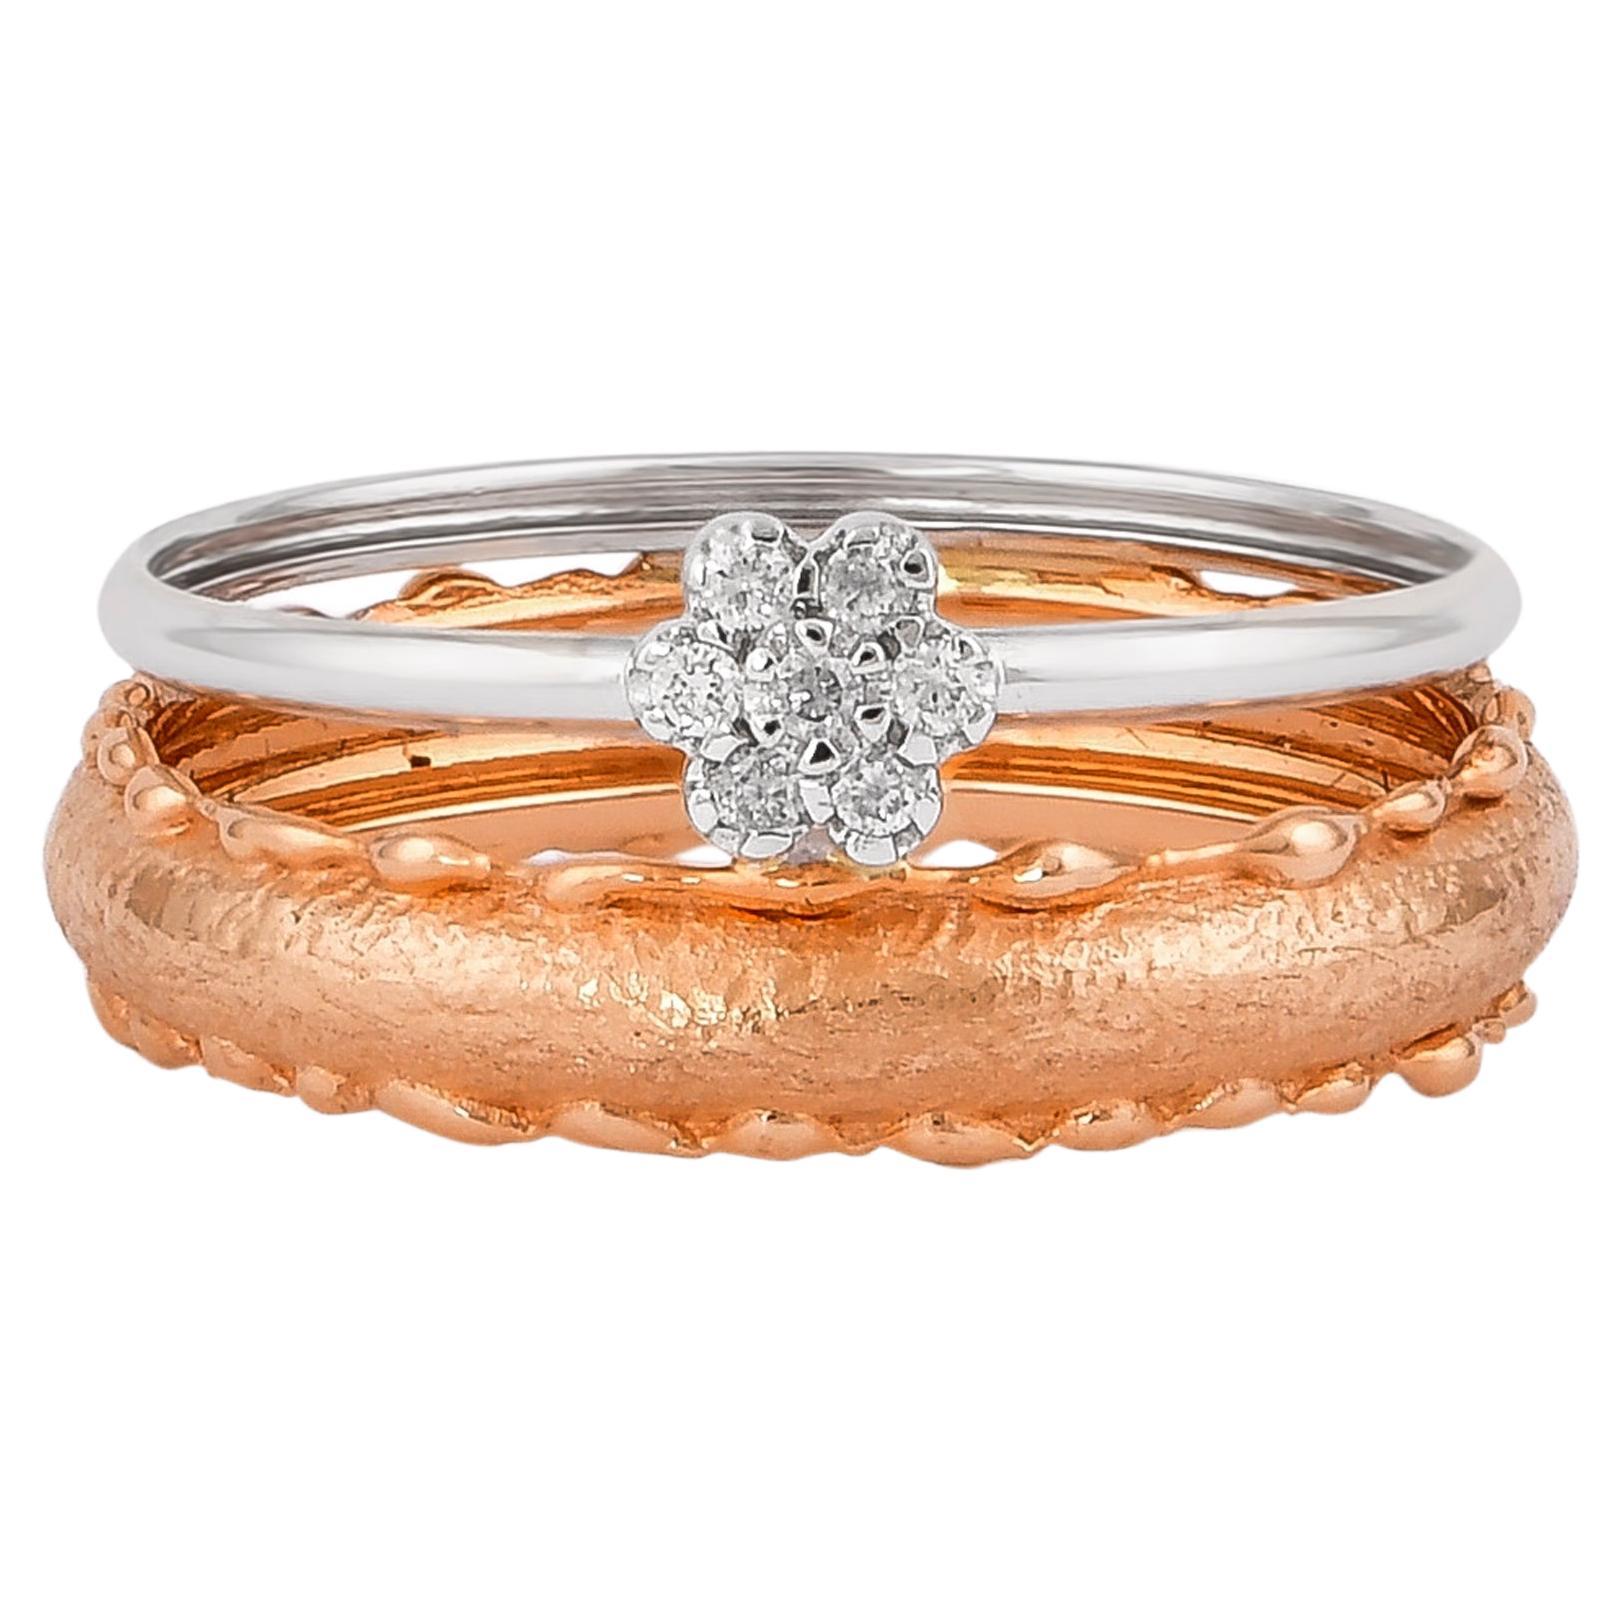 0.056 Carat Diamond Ring in 18 Karat White & Rose Gold For Sale